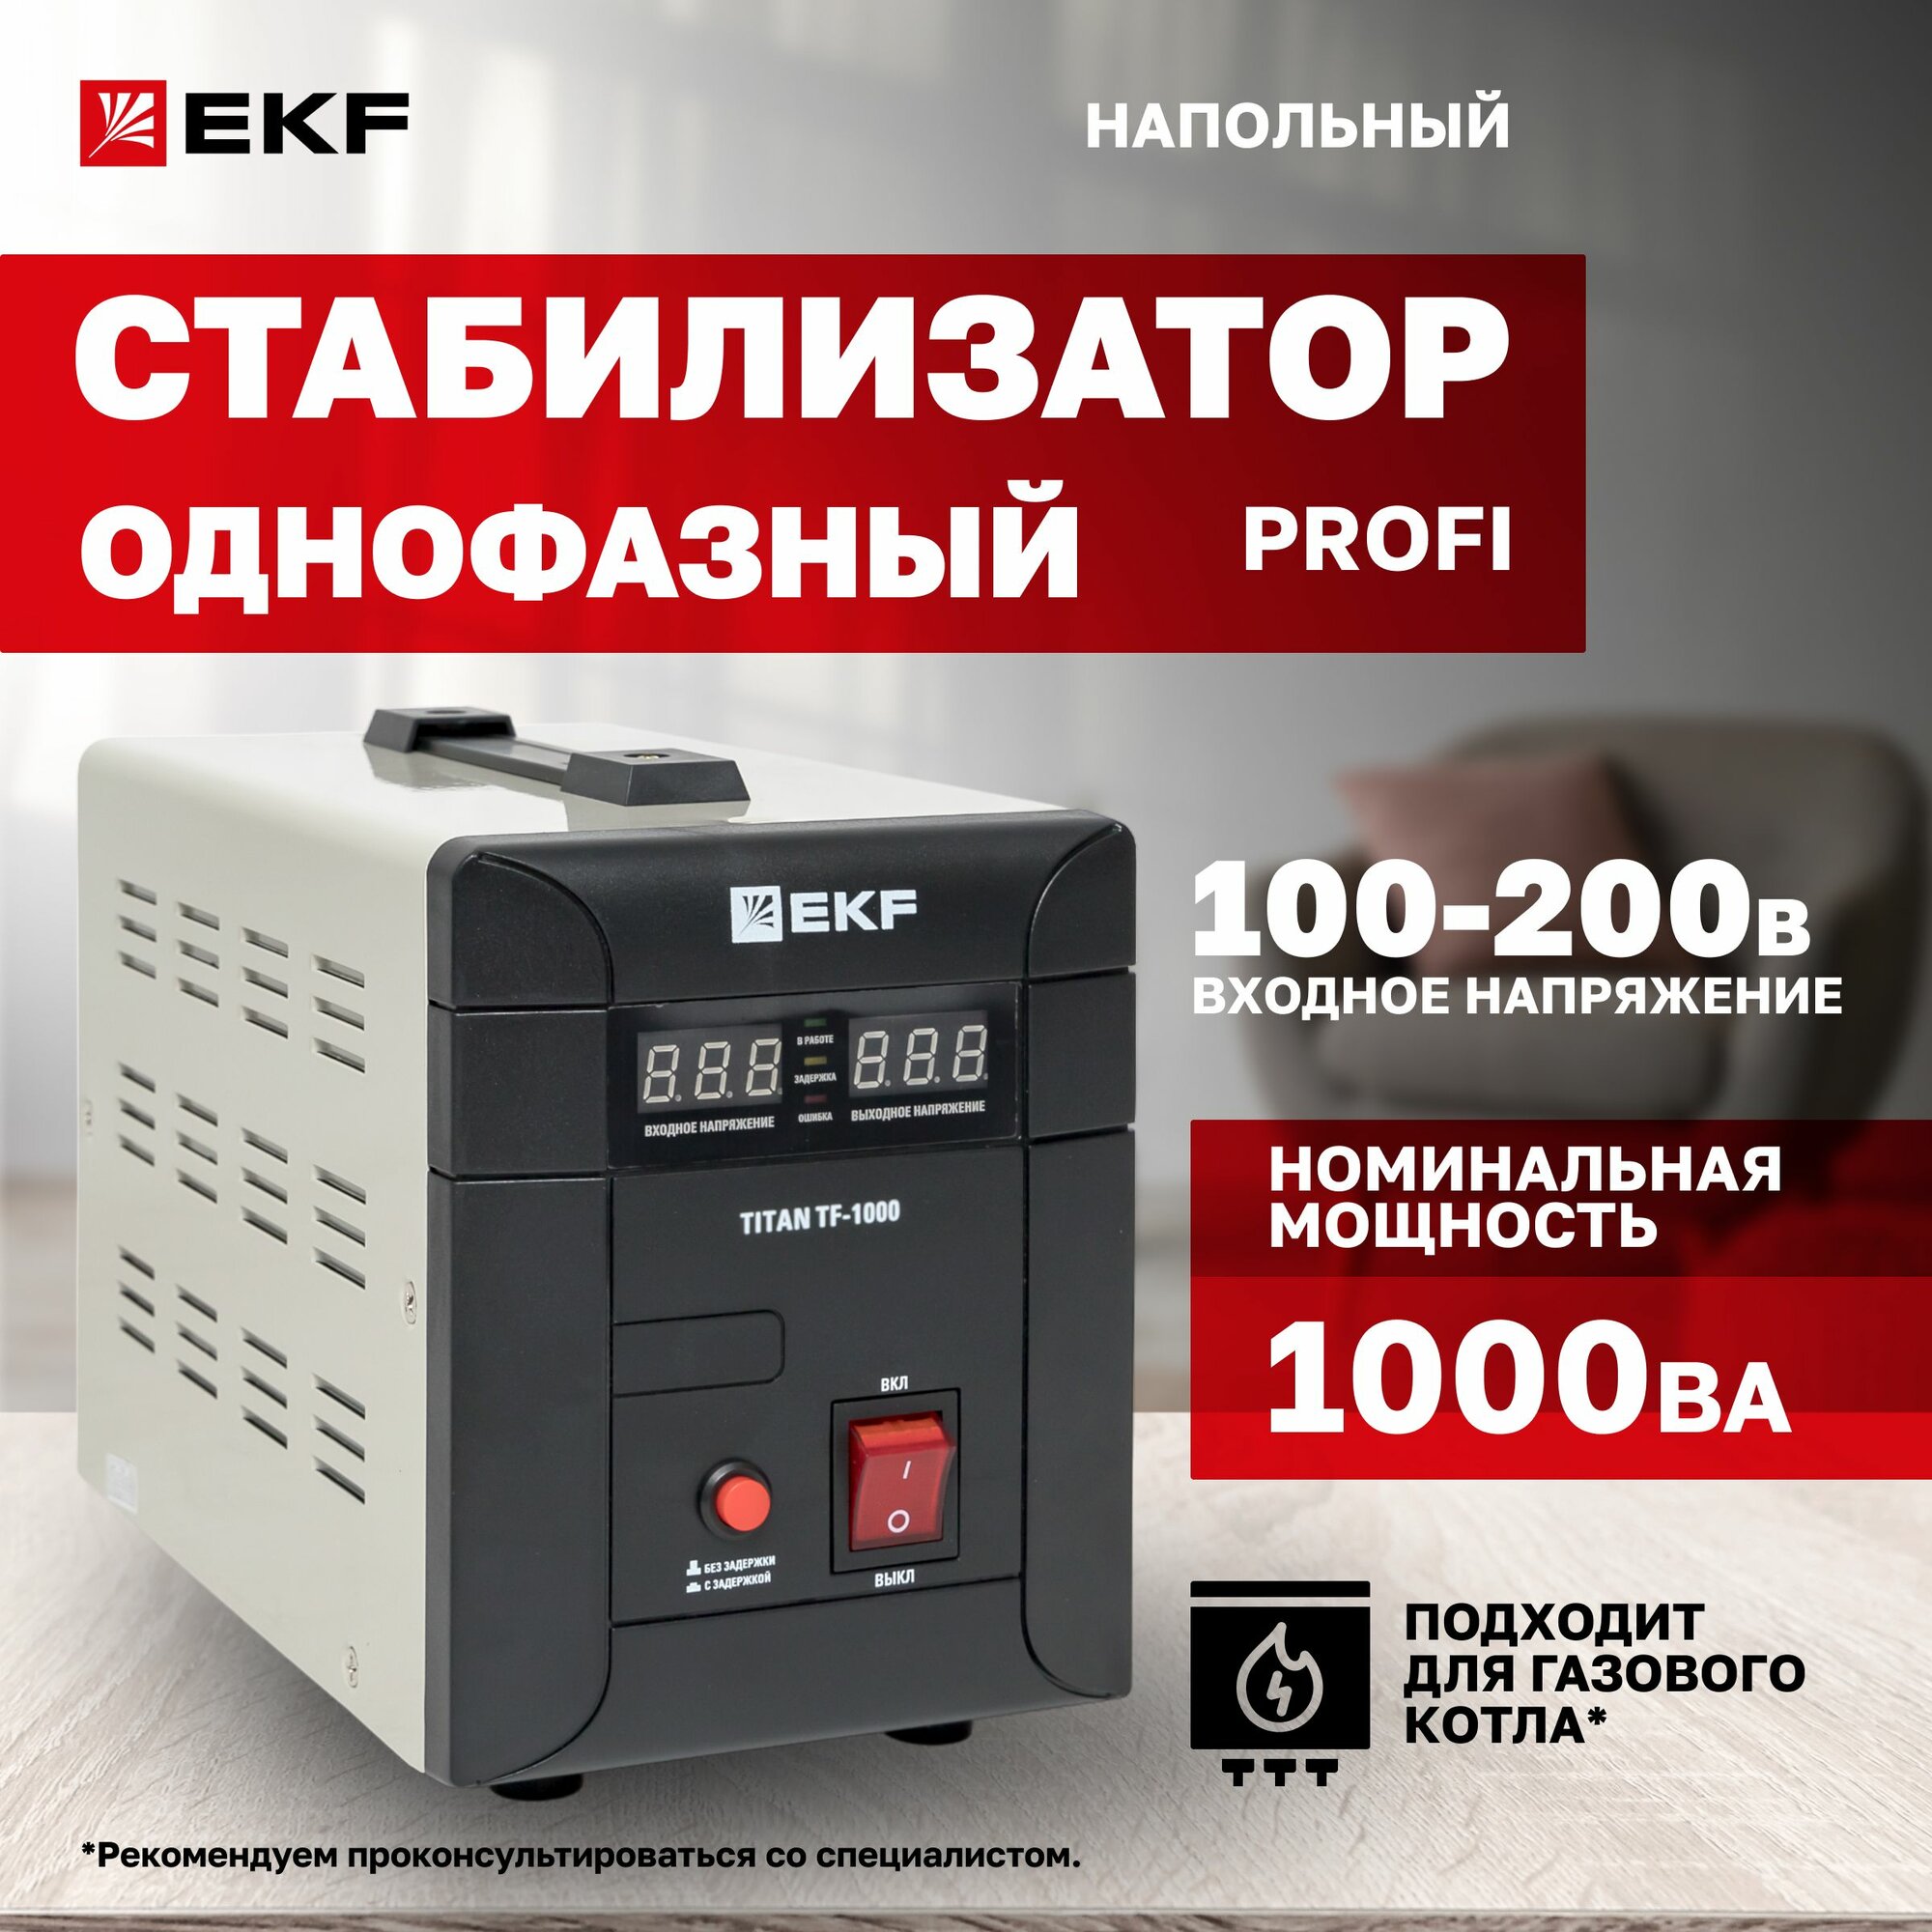 Стабилизатор напряжения электронный напольного исполнения TITAN -TF-1000 EKF